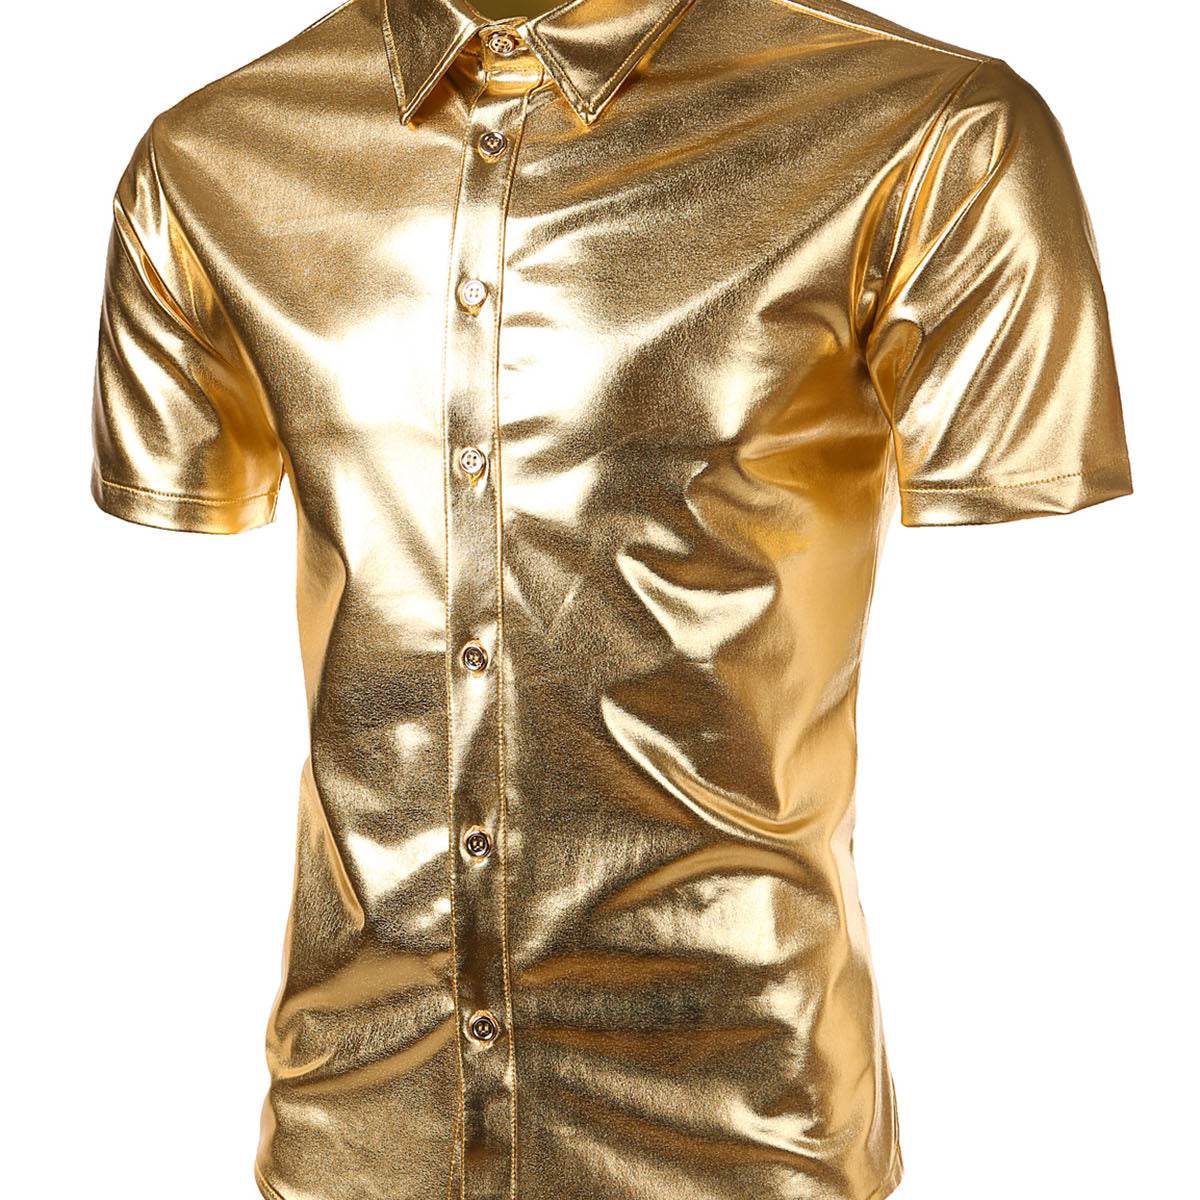 Men's Metallic Silver Shiny 70s Disco Party Button Up Short Sleeve Shirt